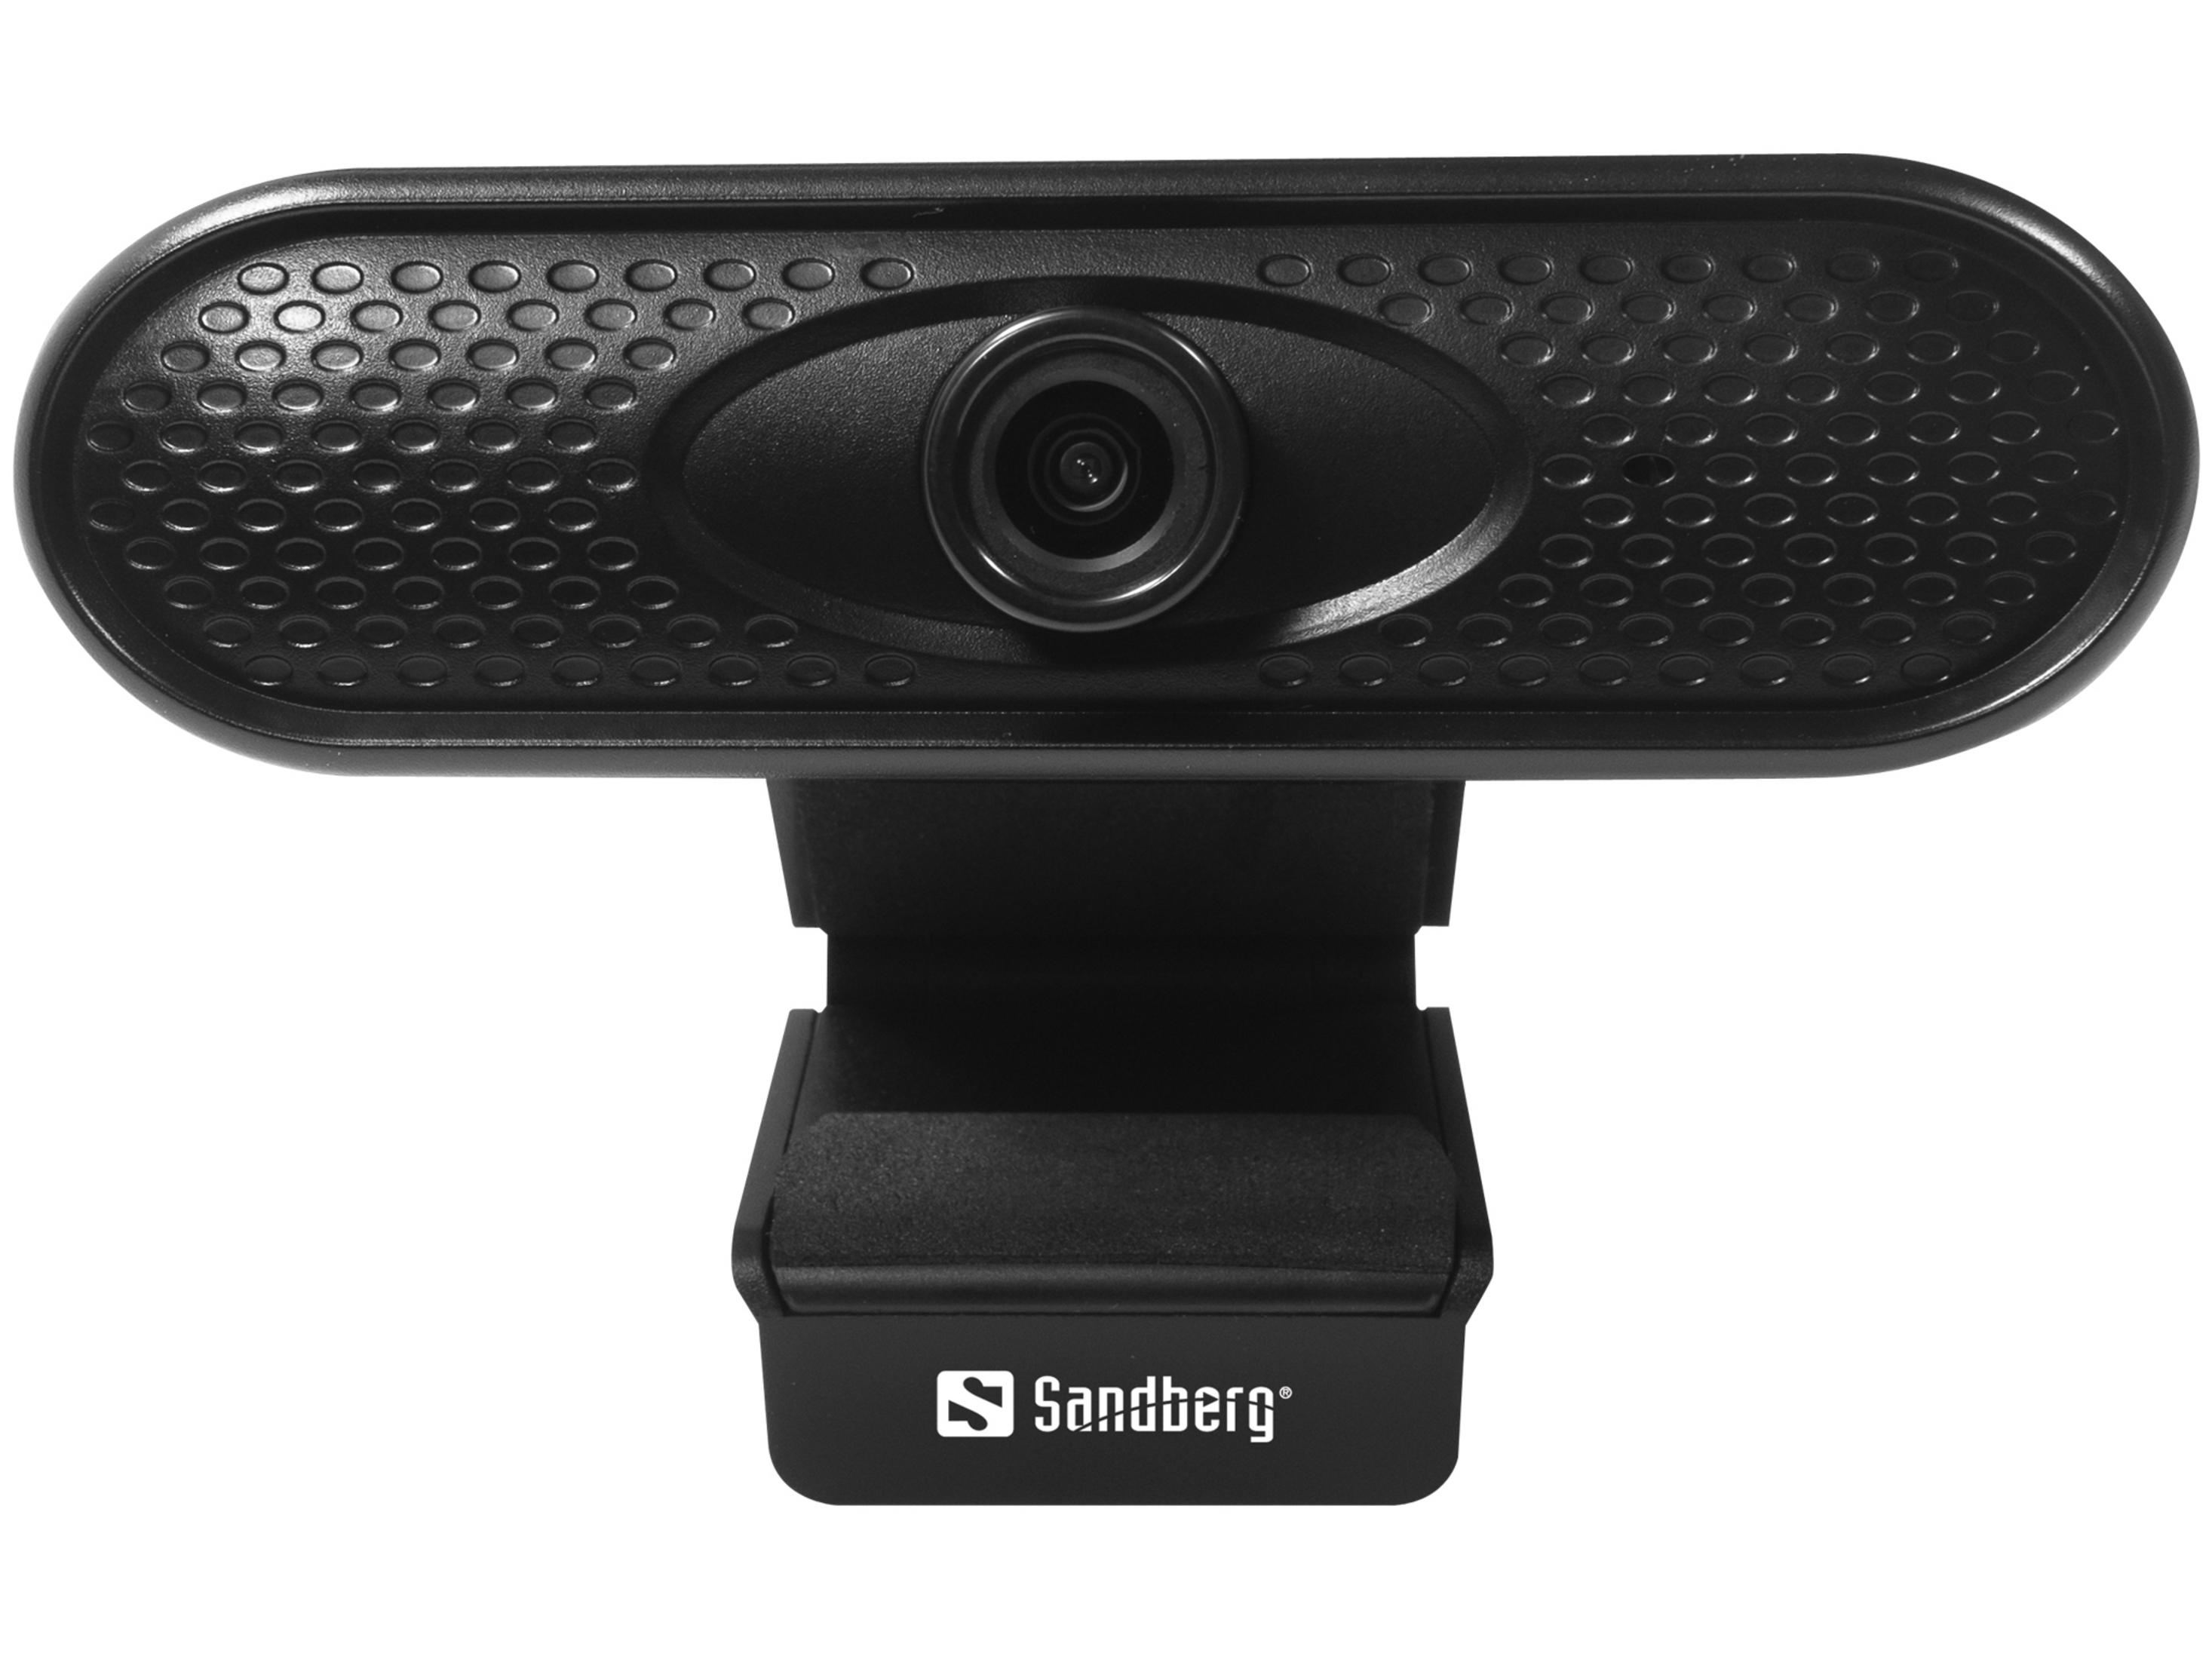 SANDBERG 133-96 USB Web Cam 1080P WEBCAM